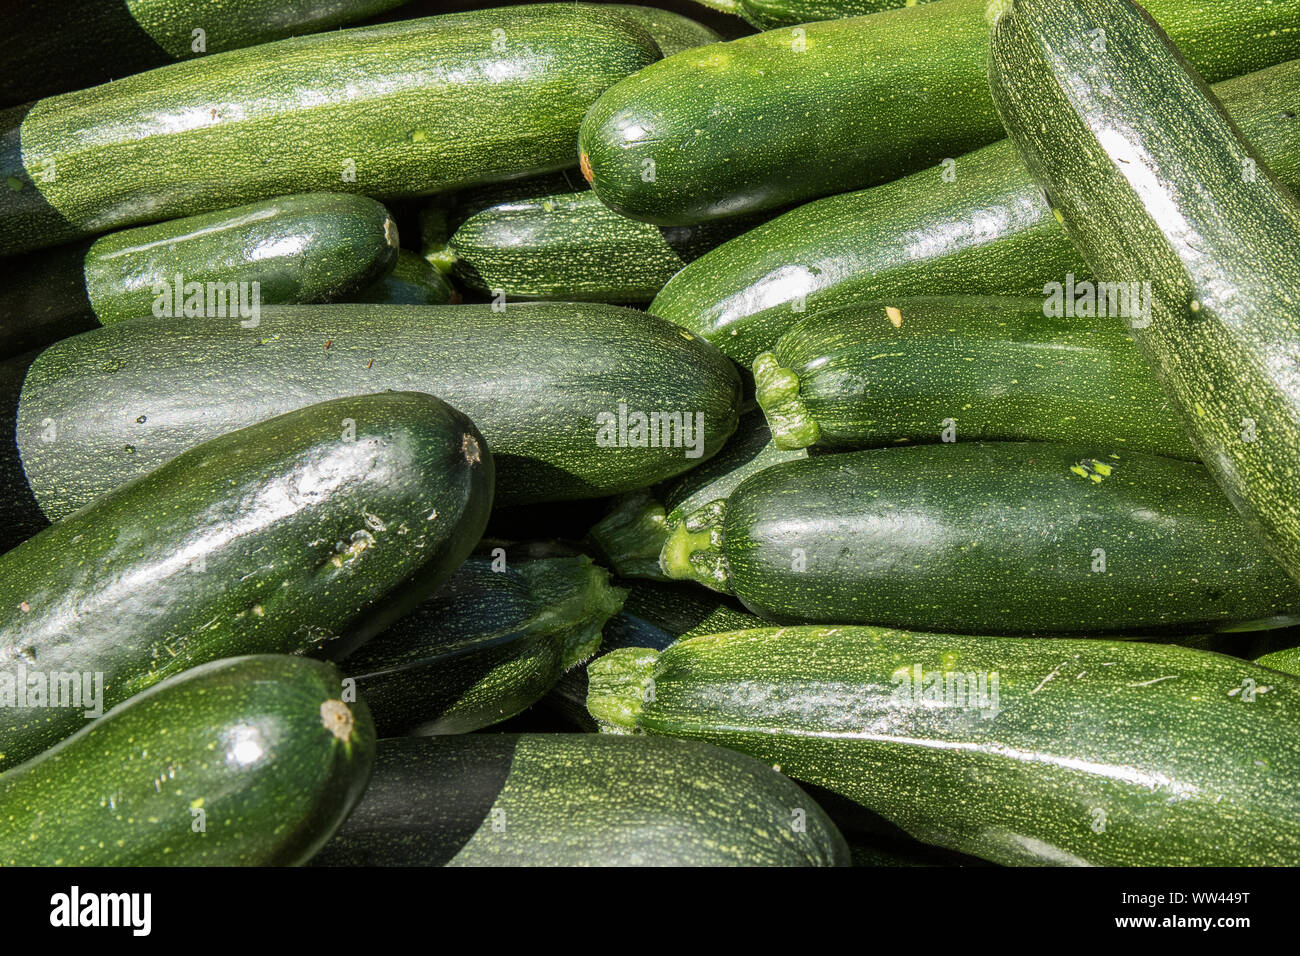 Einfach Gemüse aus dem Garten Stockfoto